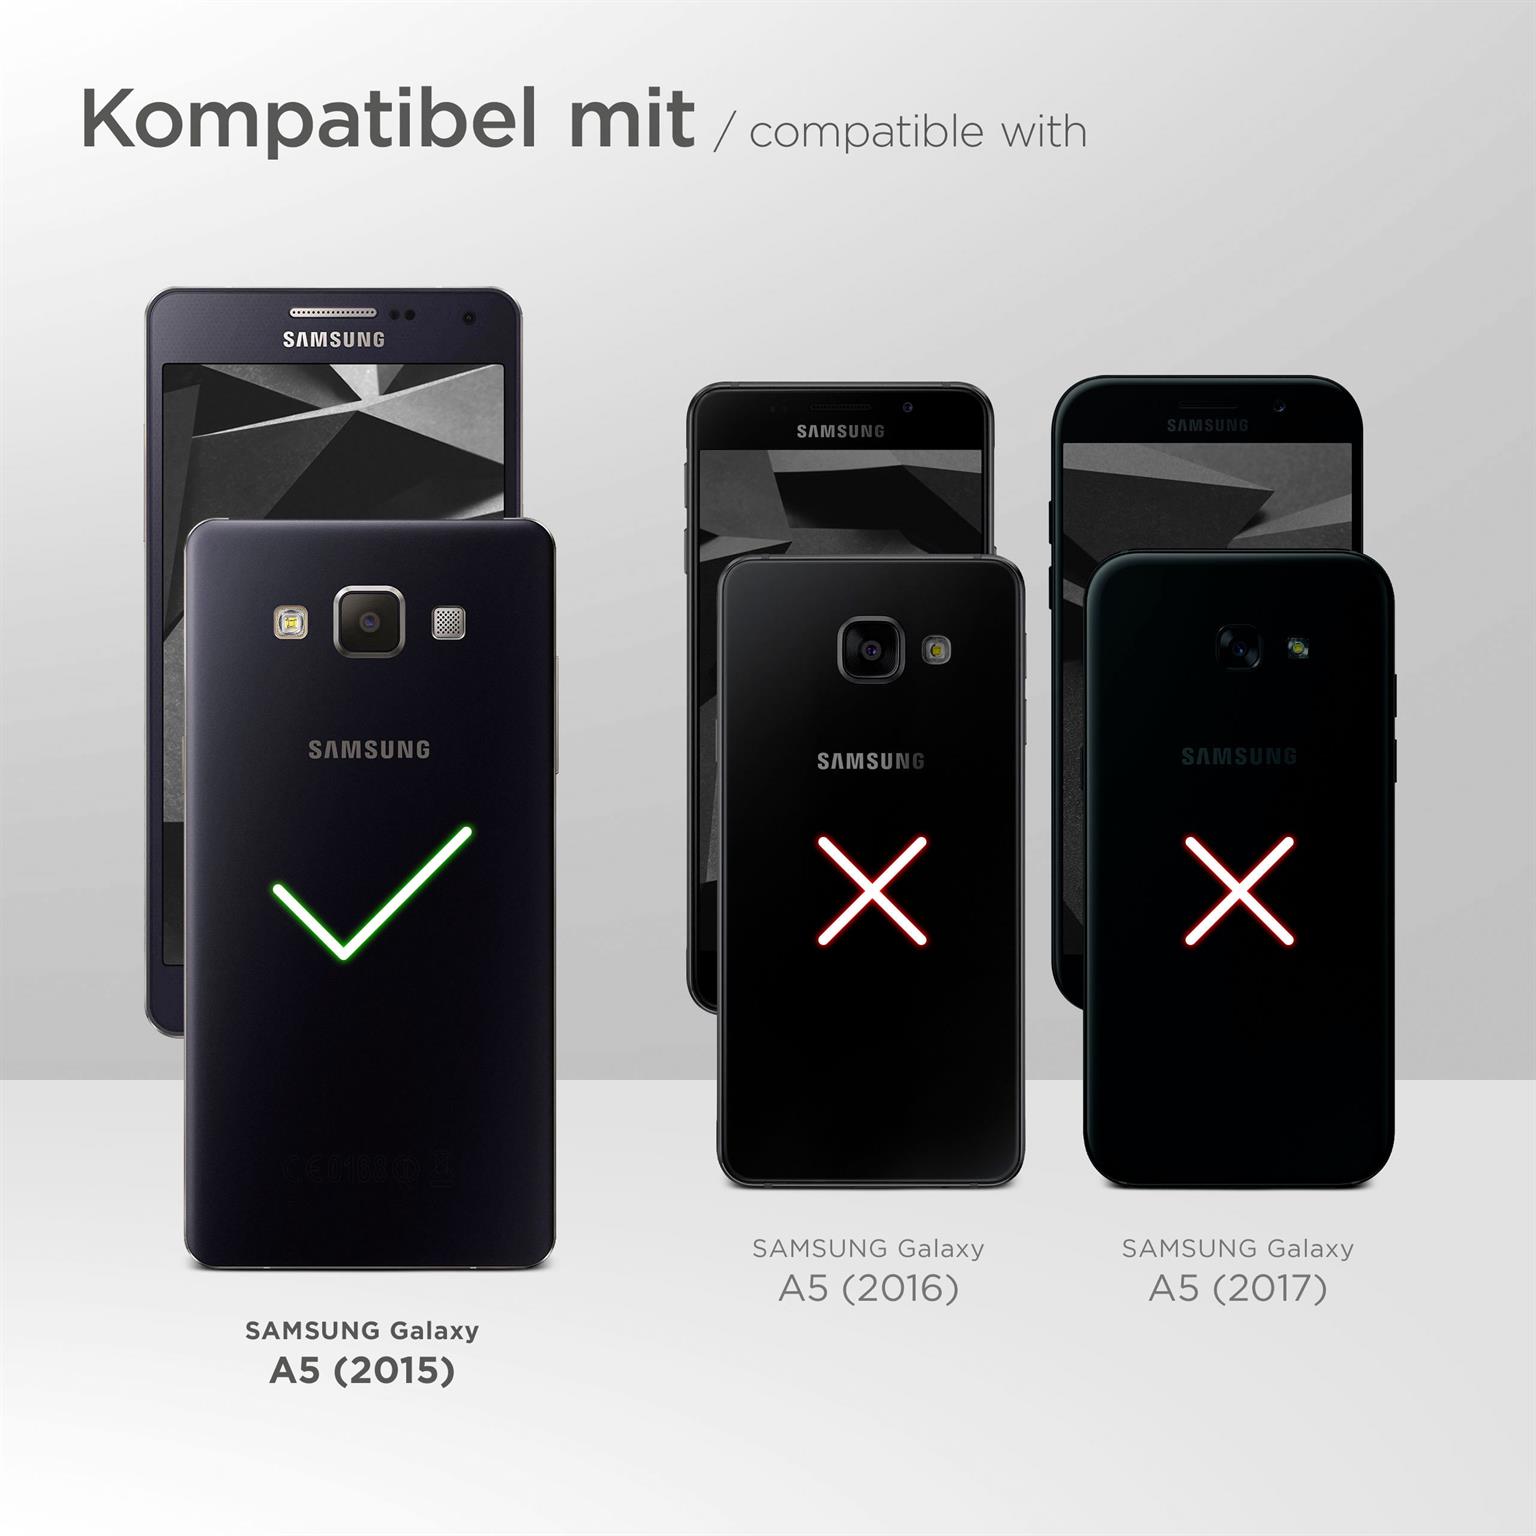 moex Book Case für Samsung Galaxy A5 (2015) – Klapphülle aus PU Leder mit Kartenfach, Komplett Schutz